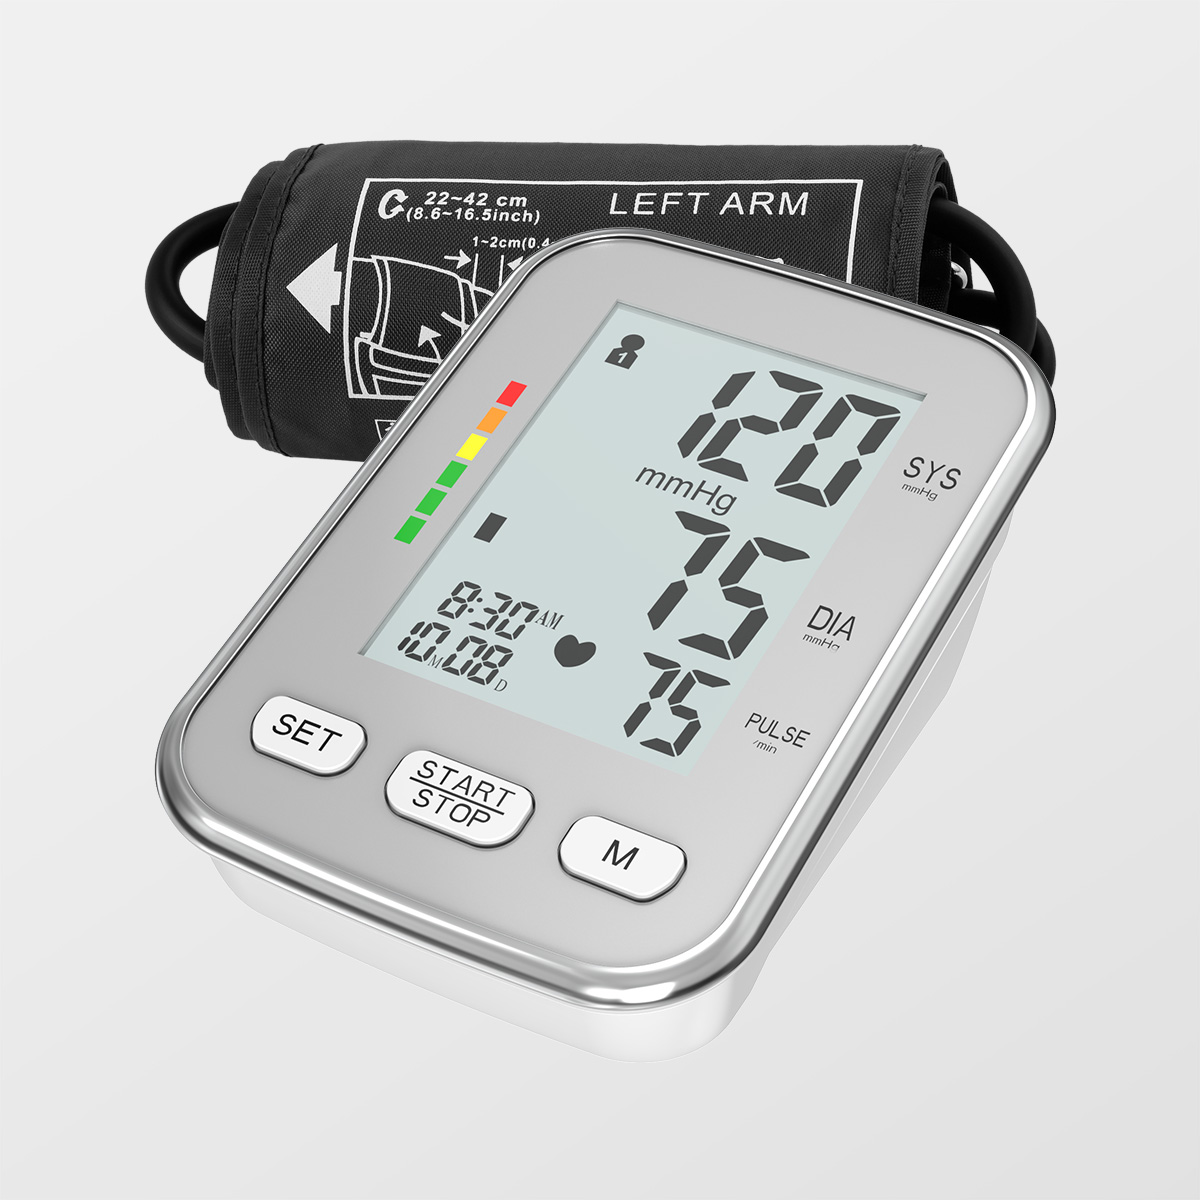 Monitor de presión arterial Bluetooth con tensiómetro dixital falante retroiluminado